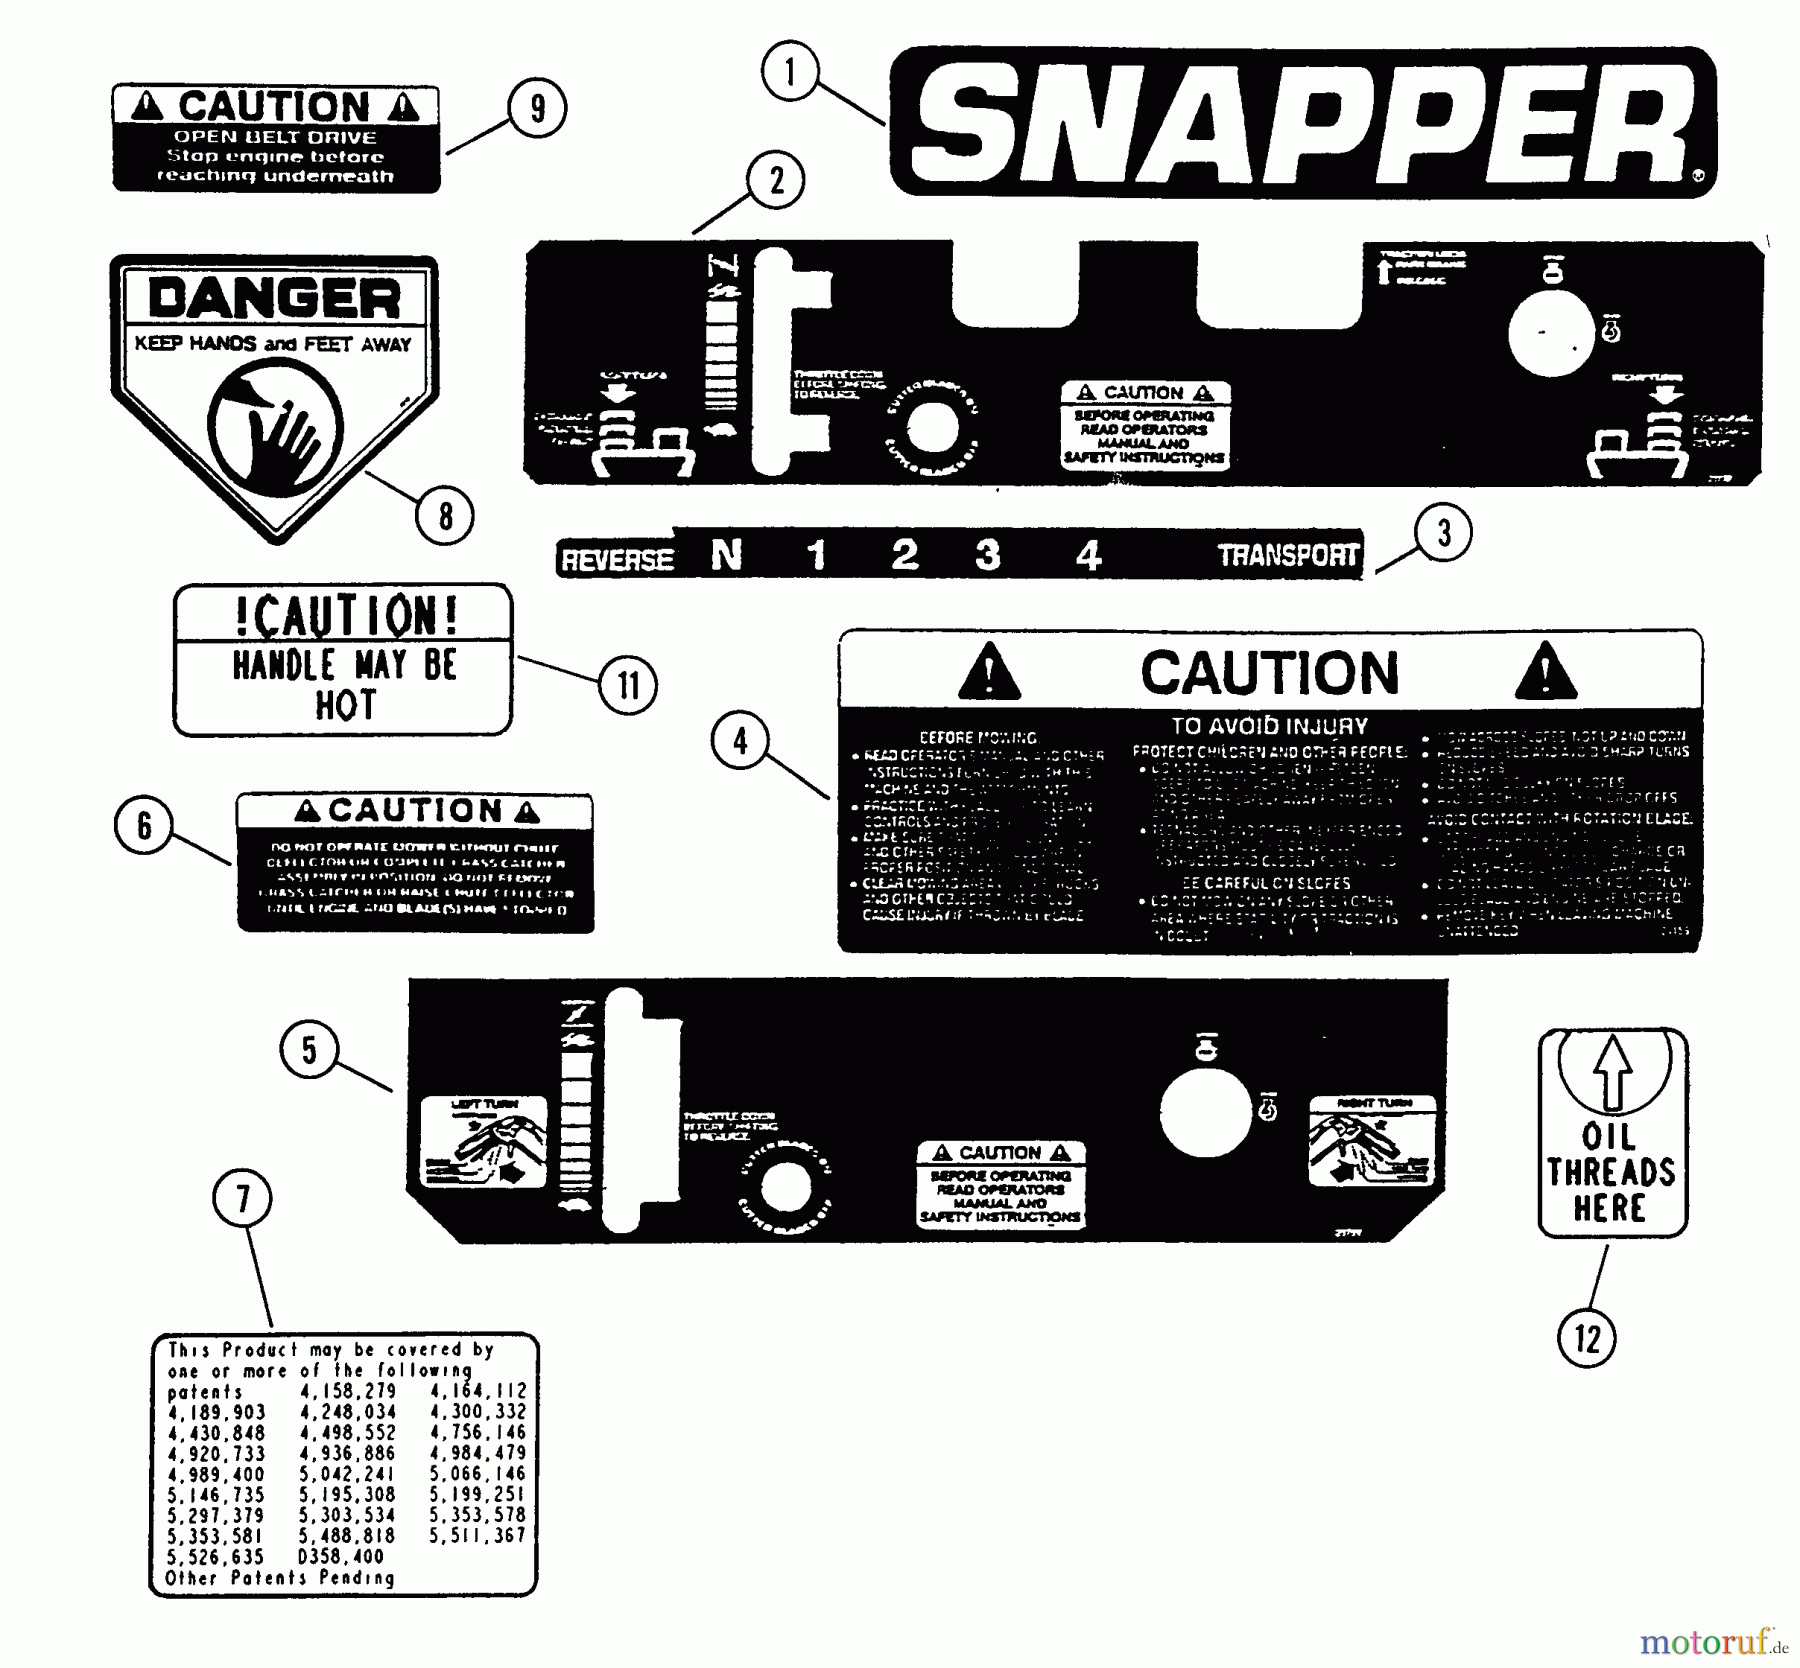  Snapper Rasenmäher für Großflächen SPP140KW - Snapper Wide-Area Walk-Behind Mower, 14 HP, Gear Drive, Pistol Grip, Series 0 Decals